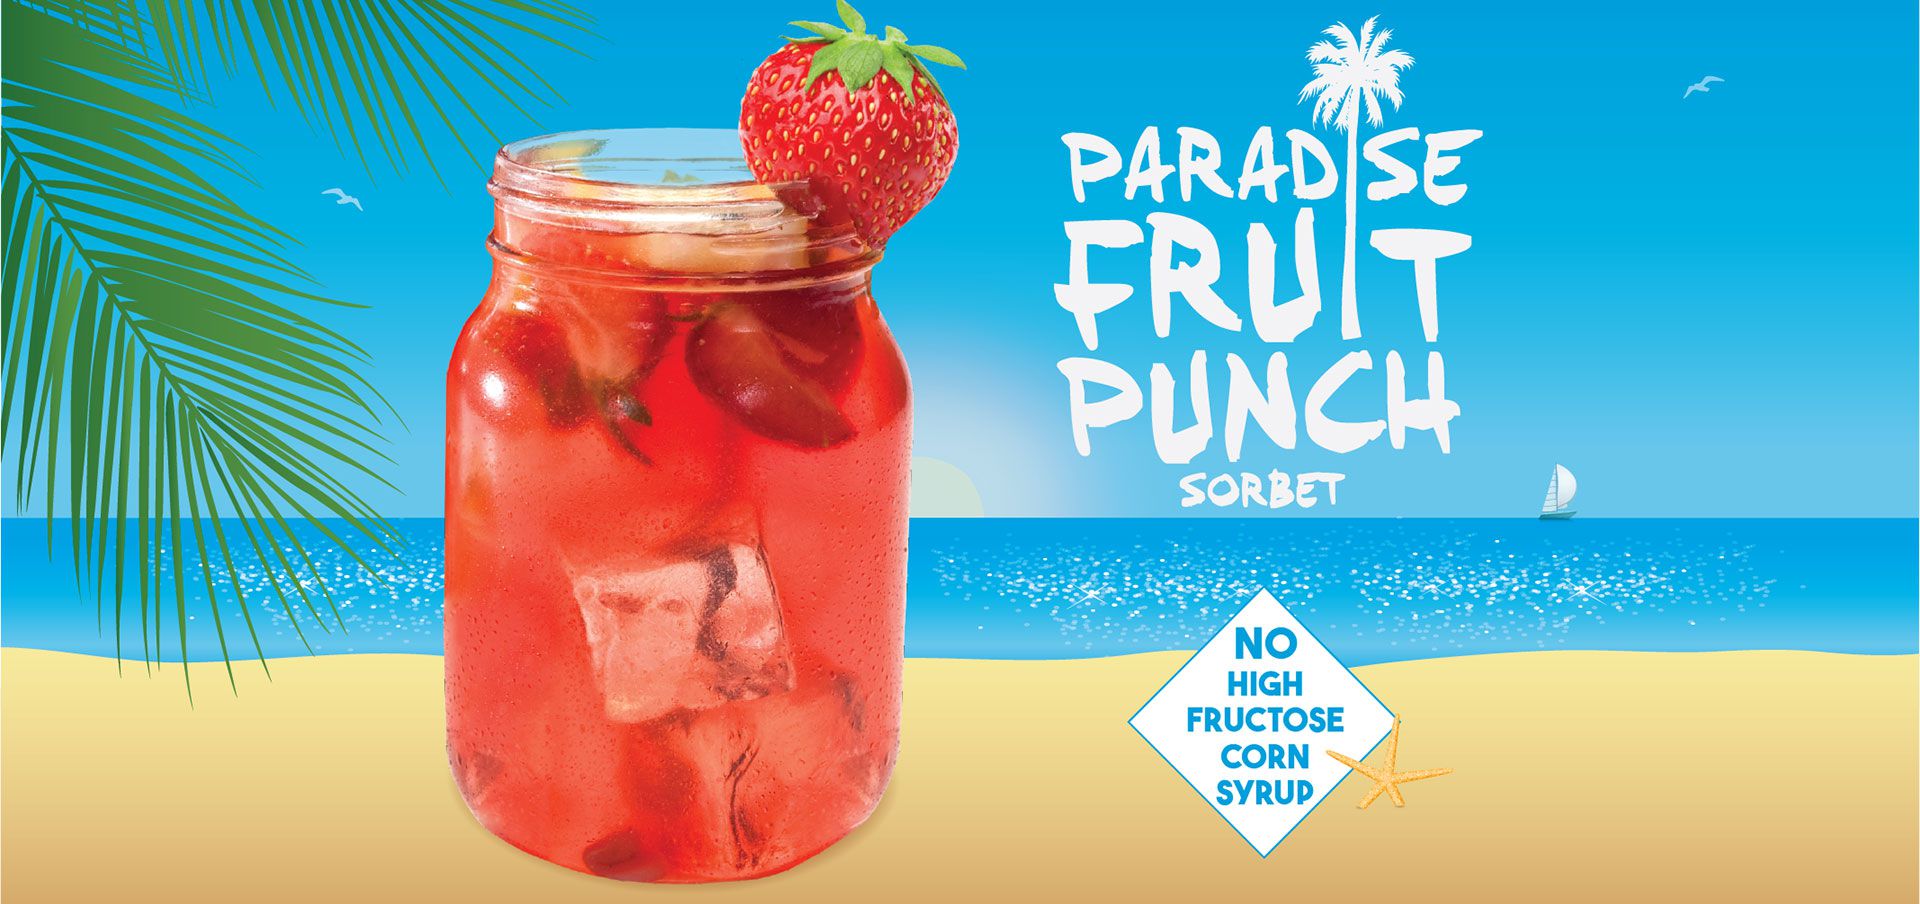 vegan paradise fruit punch sorbet label image